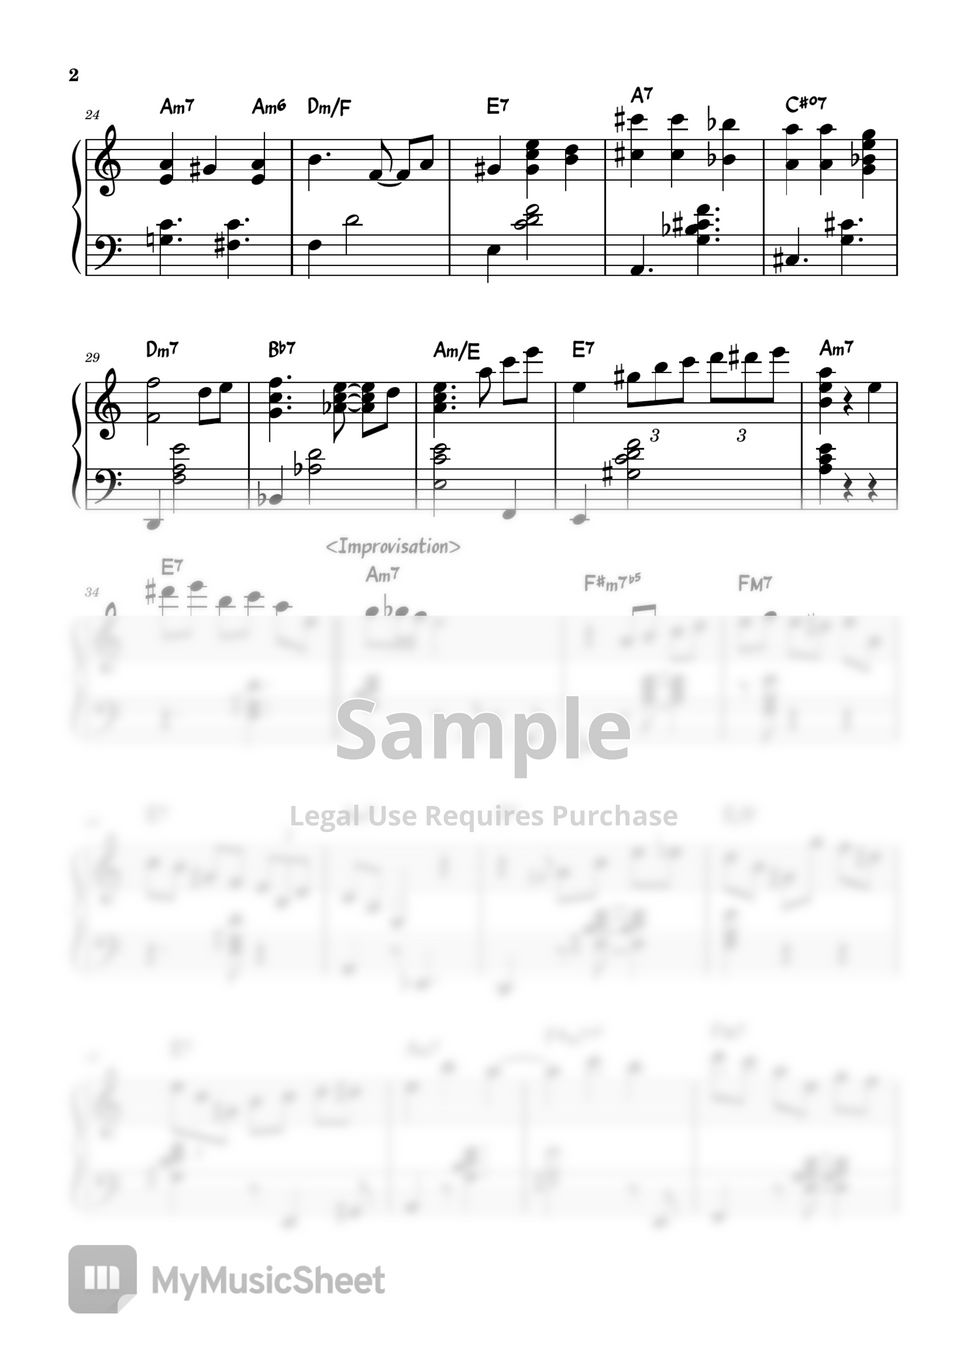 Liszt - La campanella (Jazz Ver.) by KoYumi Music